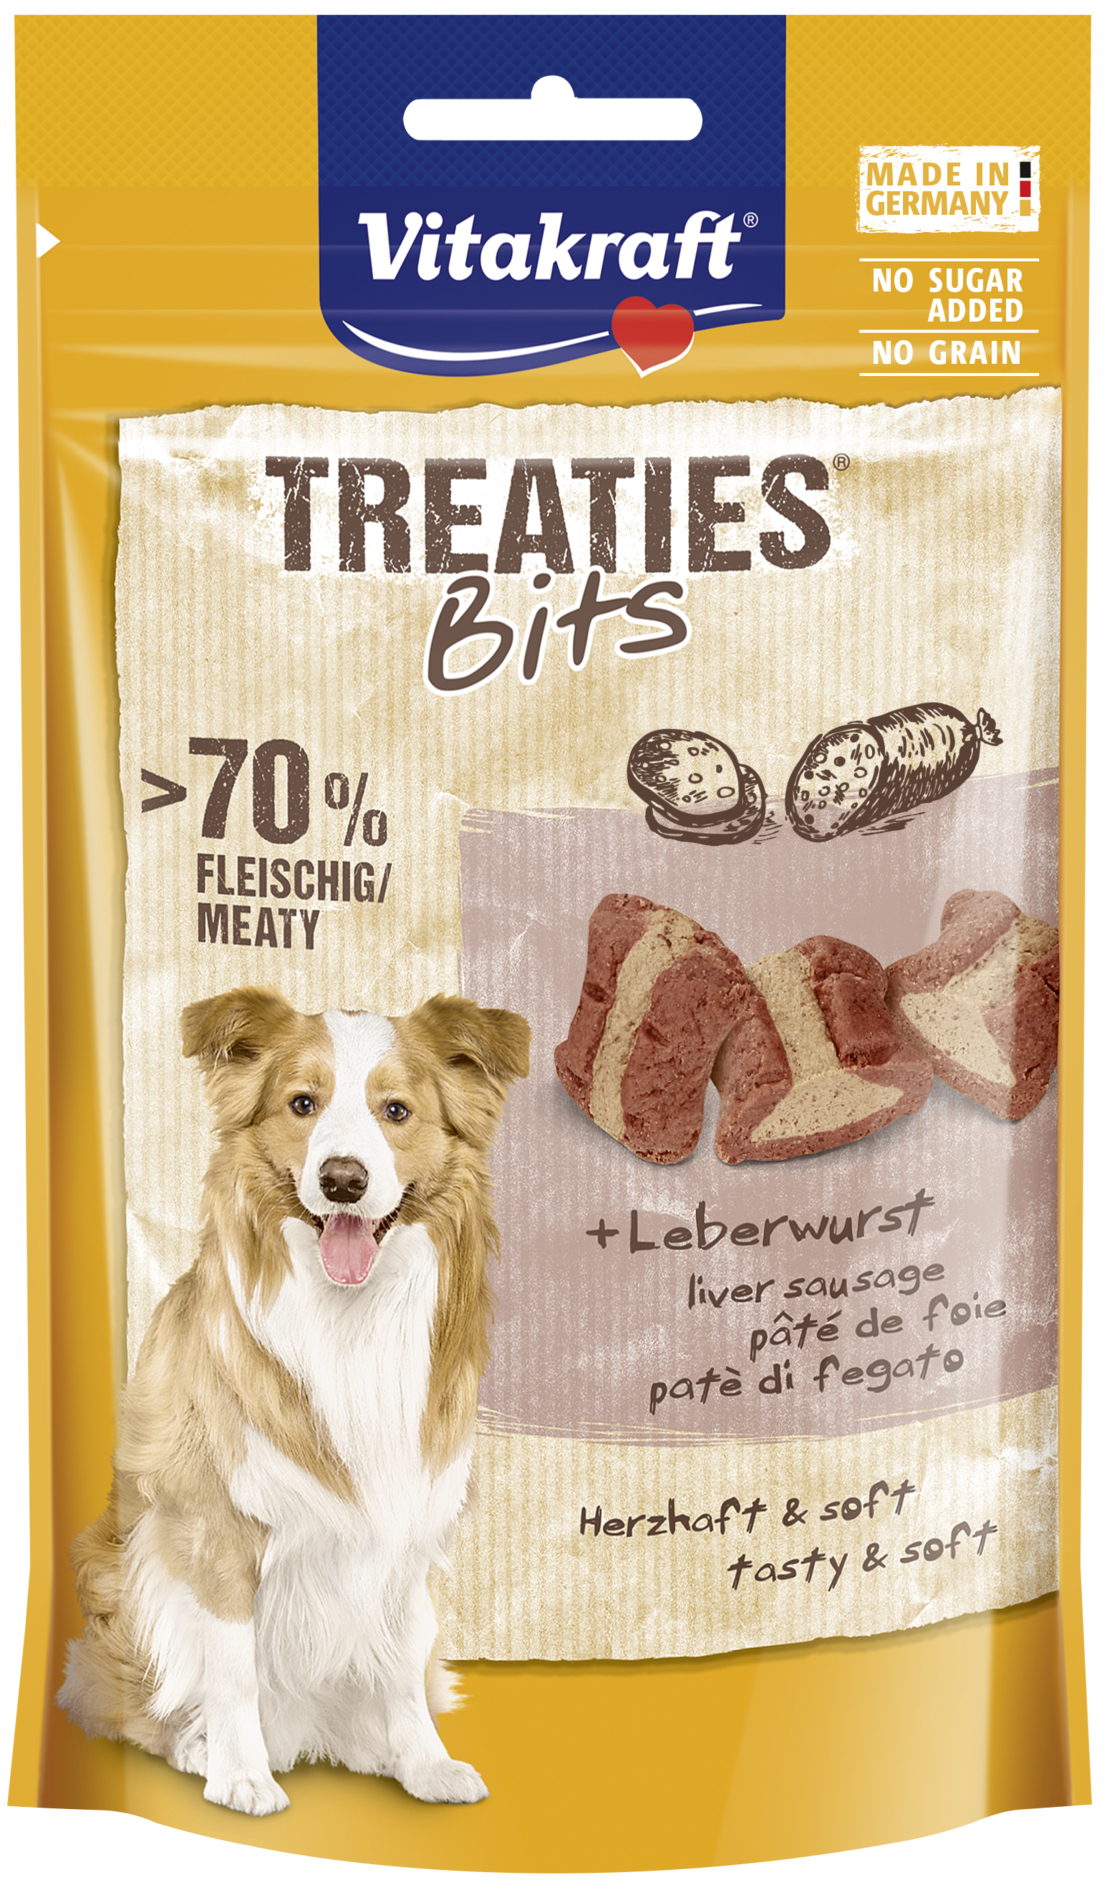 Friandises Treaties bits pour chien - plusieurs saveurs disponibles